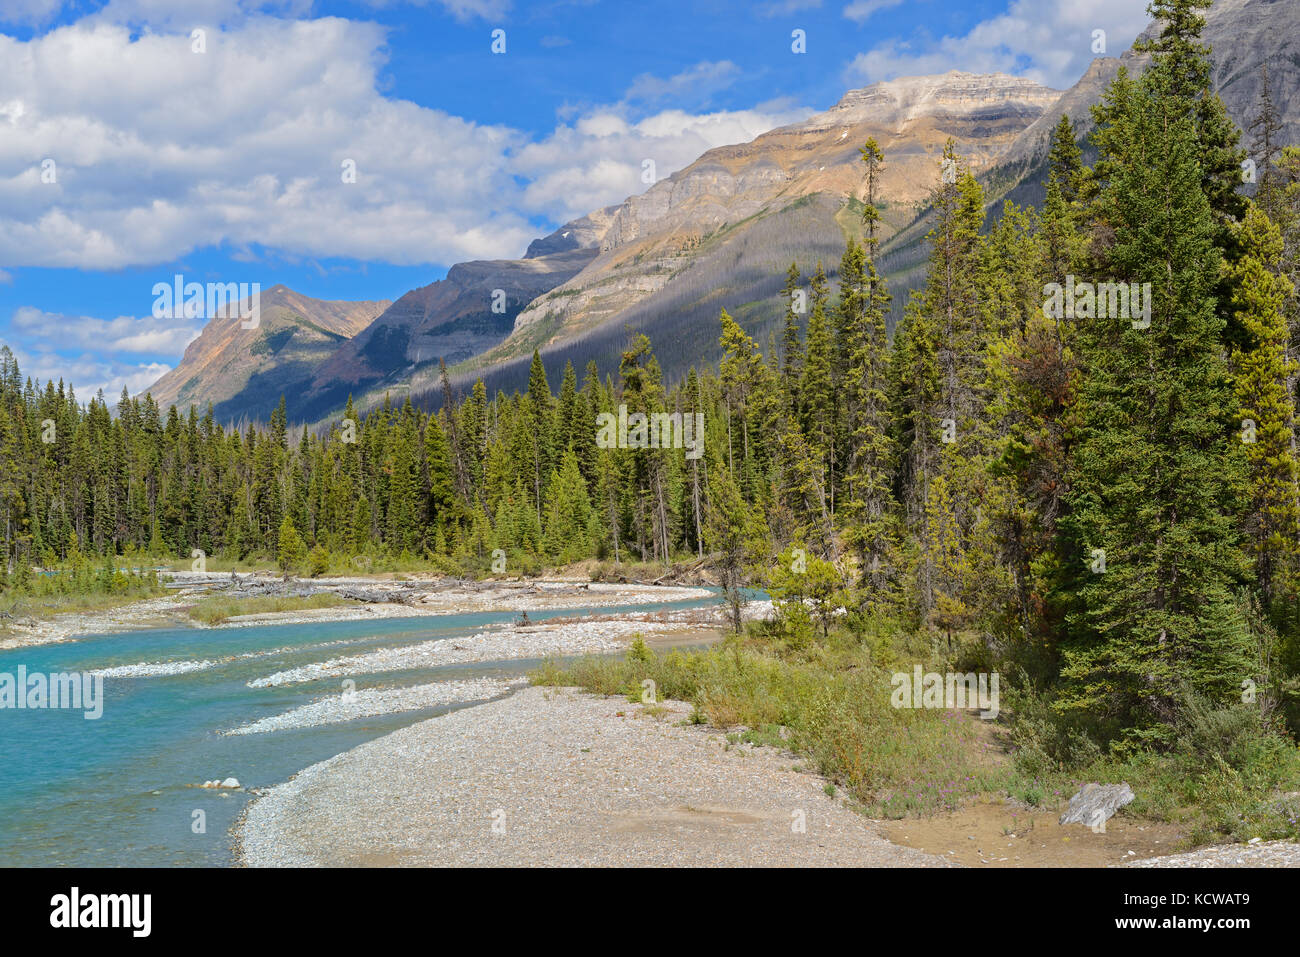 Rivière vermillion et les rocheuses canadiennes, le parc national de Kootenay, Colombie-Britannique, Canada Banque D'Images